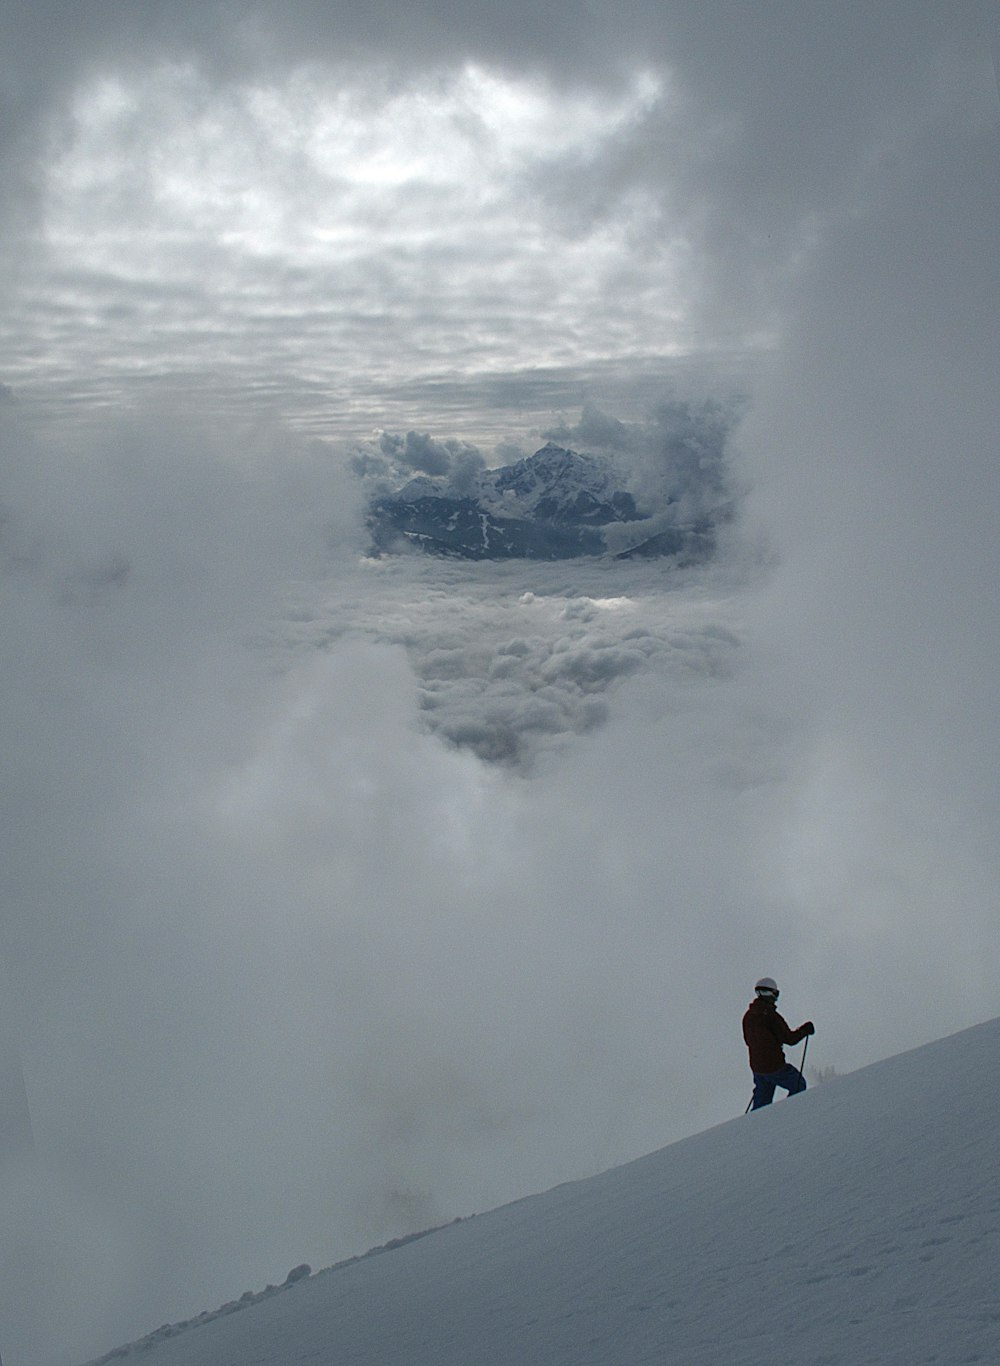 Una persona parada en una colina nevada